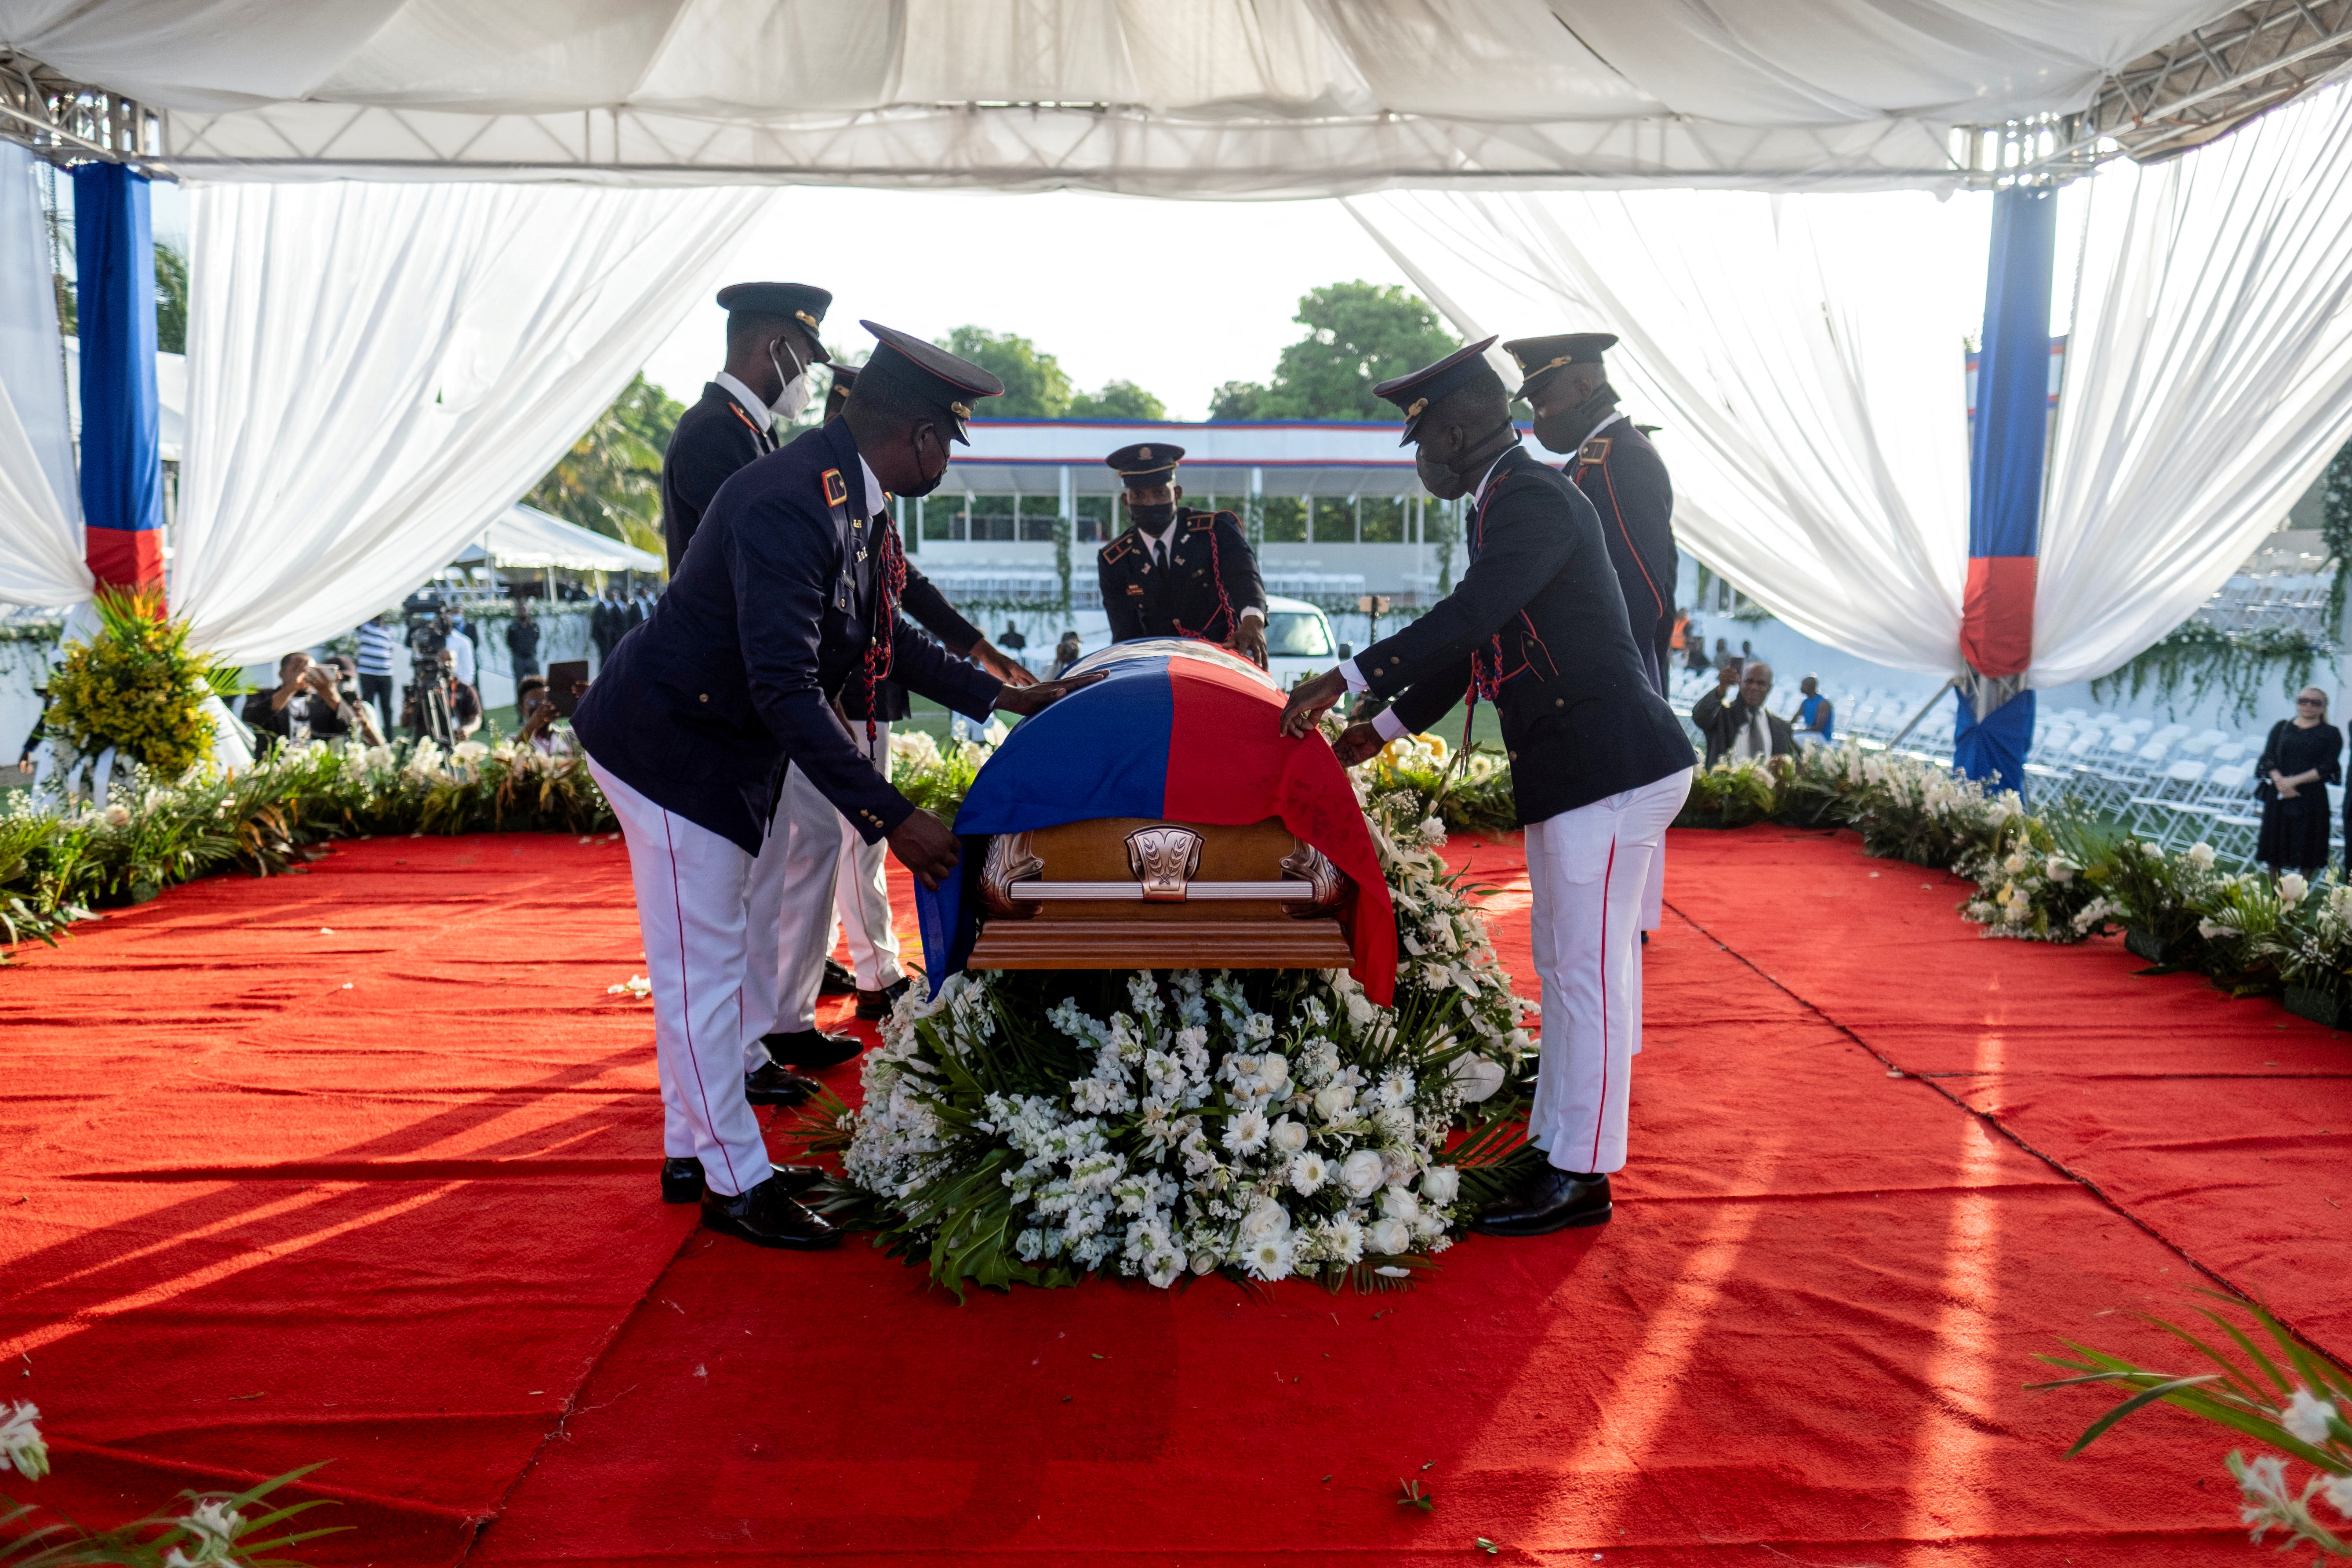 FOTO DE ARCHIVO: Los guardias de honor presidenciales colocan una bandera nacional sobre el ataúd del difunto presidente haitiano Jovenel Moise, quien fue asesinado a tiros a principios de este mes, durante el funeral en la casa de su familia en Cabo Haitiano, Haití, el 23 de julio de 2021. REUTERS/Ricardo Arduengo/Foto de archivo